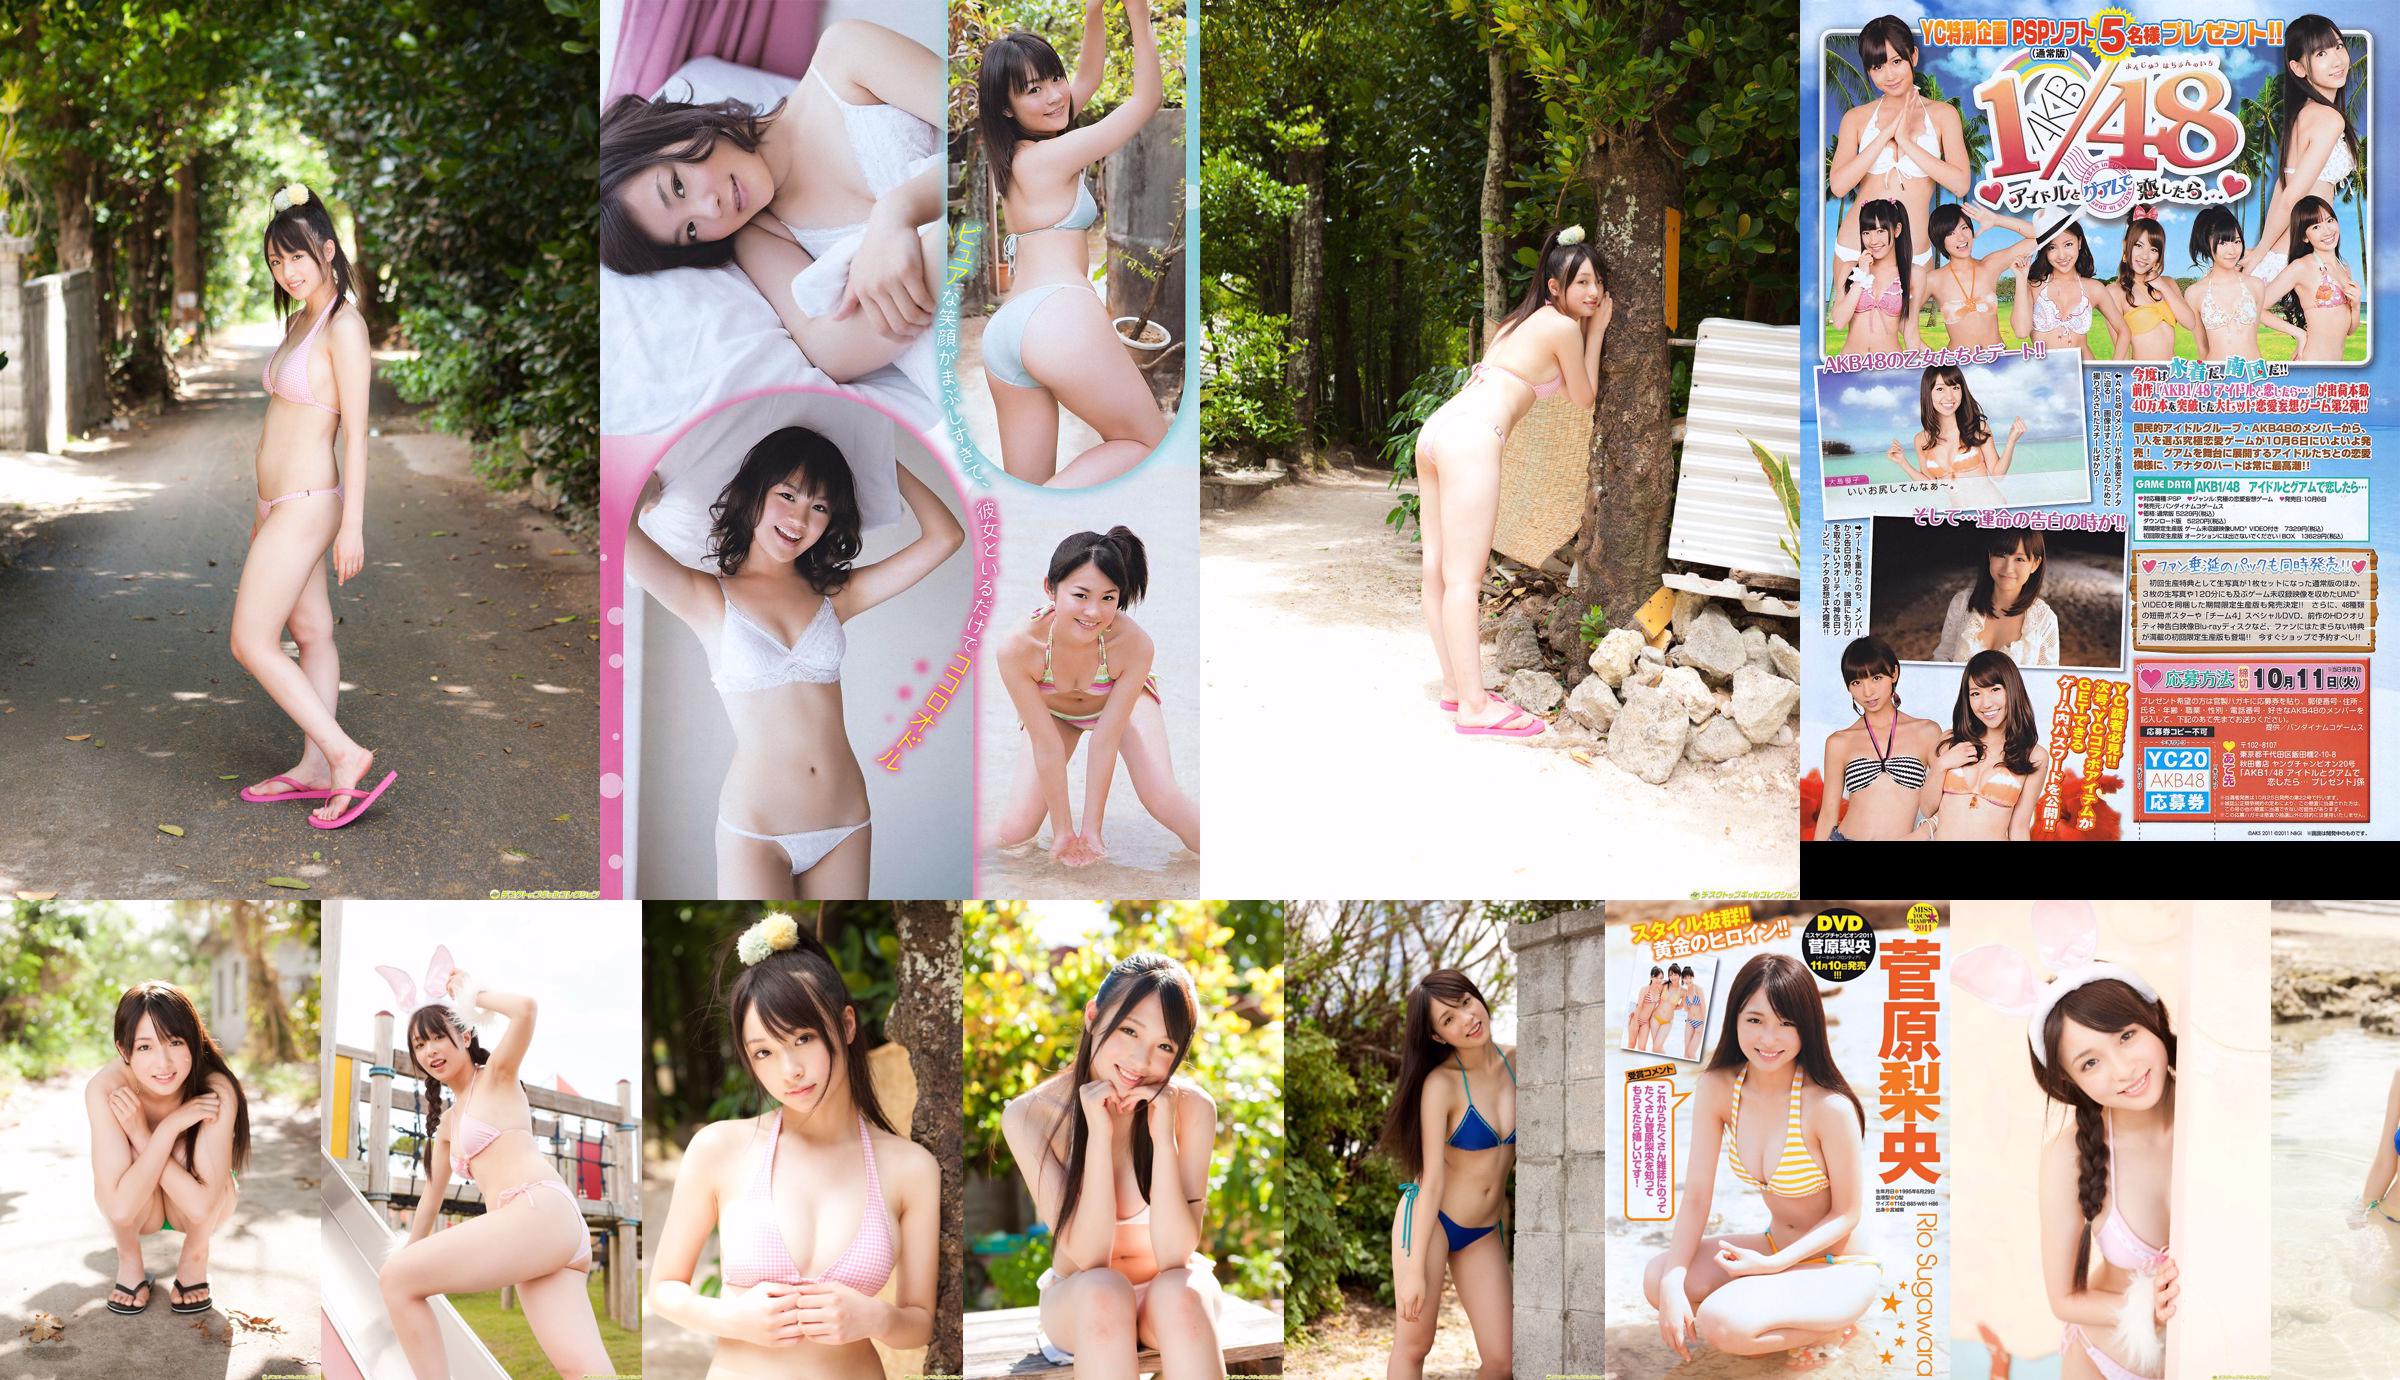 [젊은 챔피언] 스가와라 리사, 호리 카와 미카코, 마츠시마의 か 2011 No. 20 Photo Magazine No.424683 페이지 1